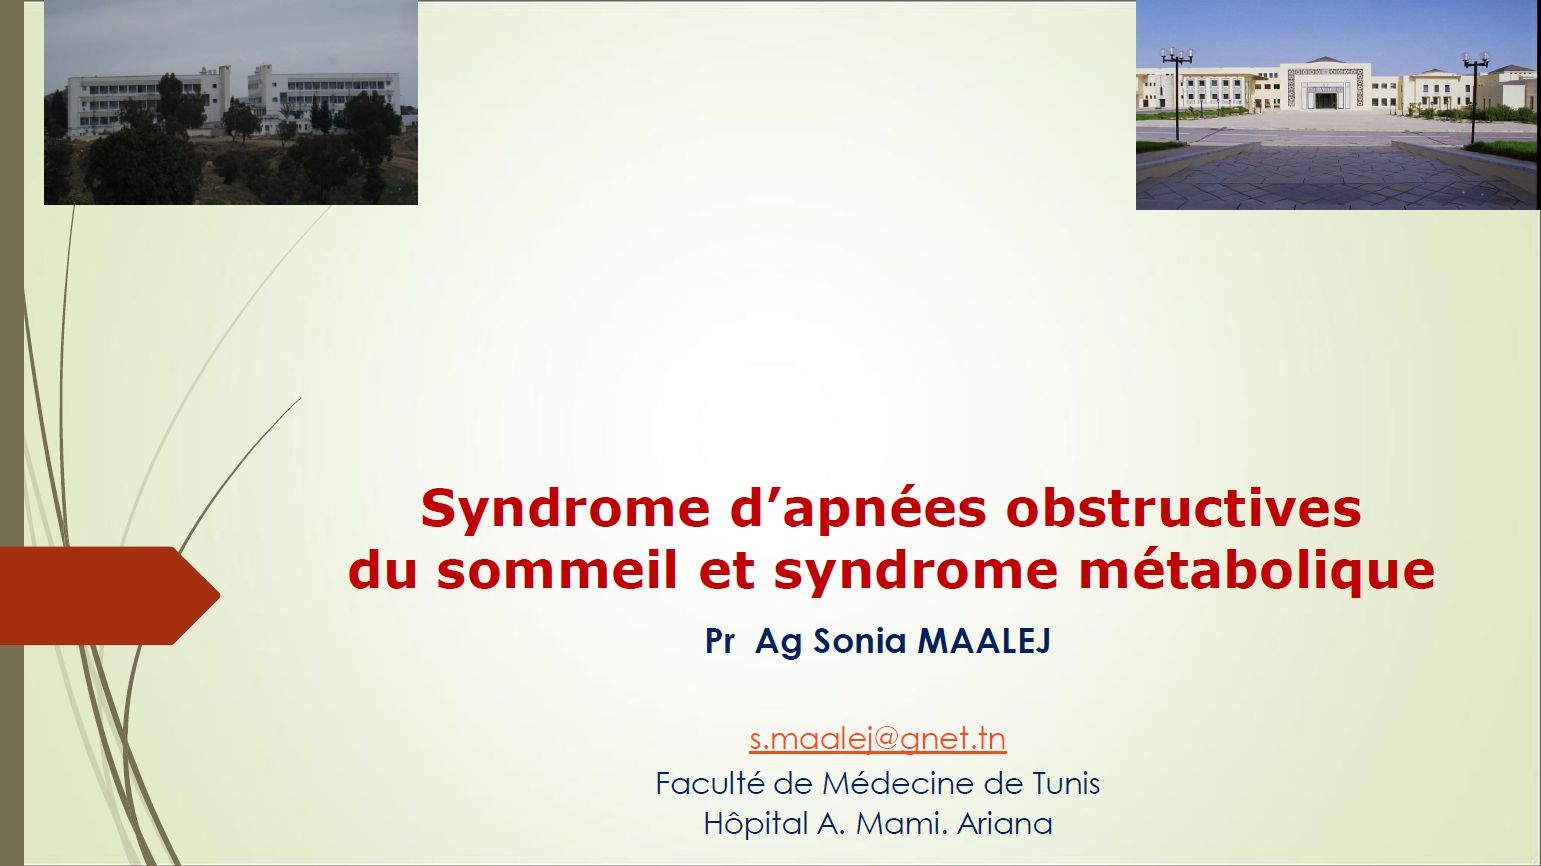 Syndrome d’apnées obstructives du sommeil et syndrome métabolique. Sonia Maalej